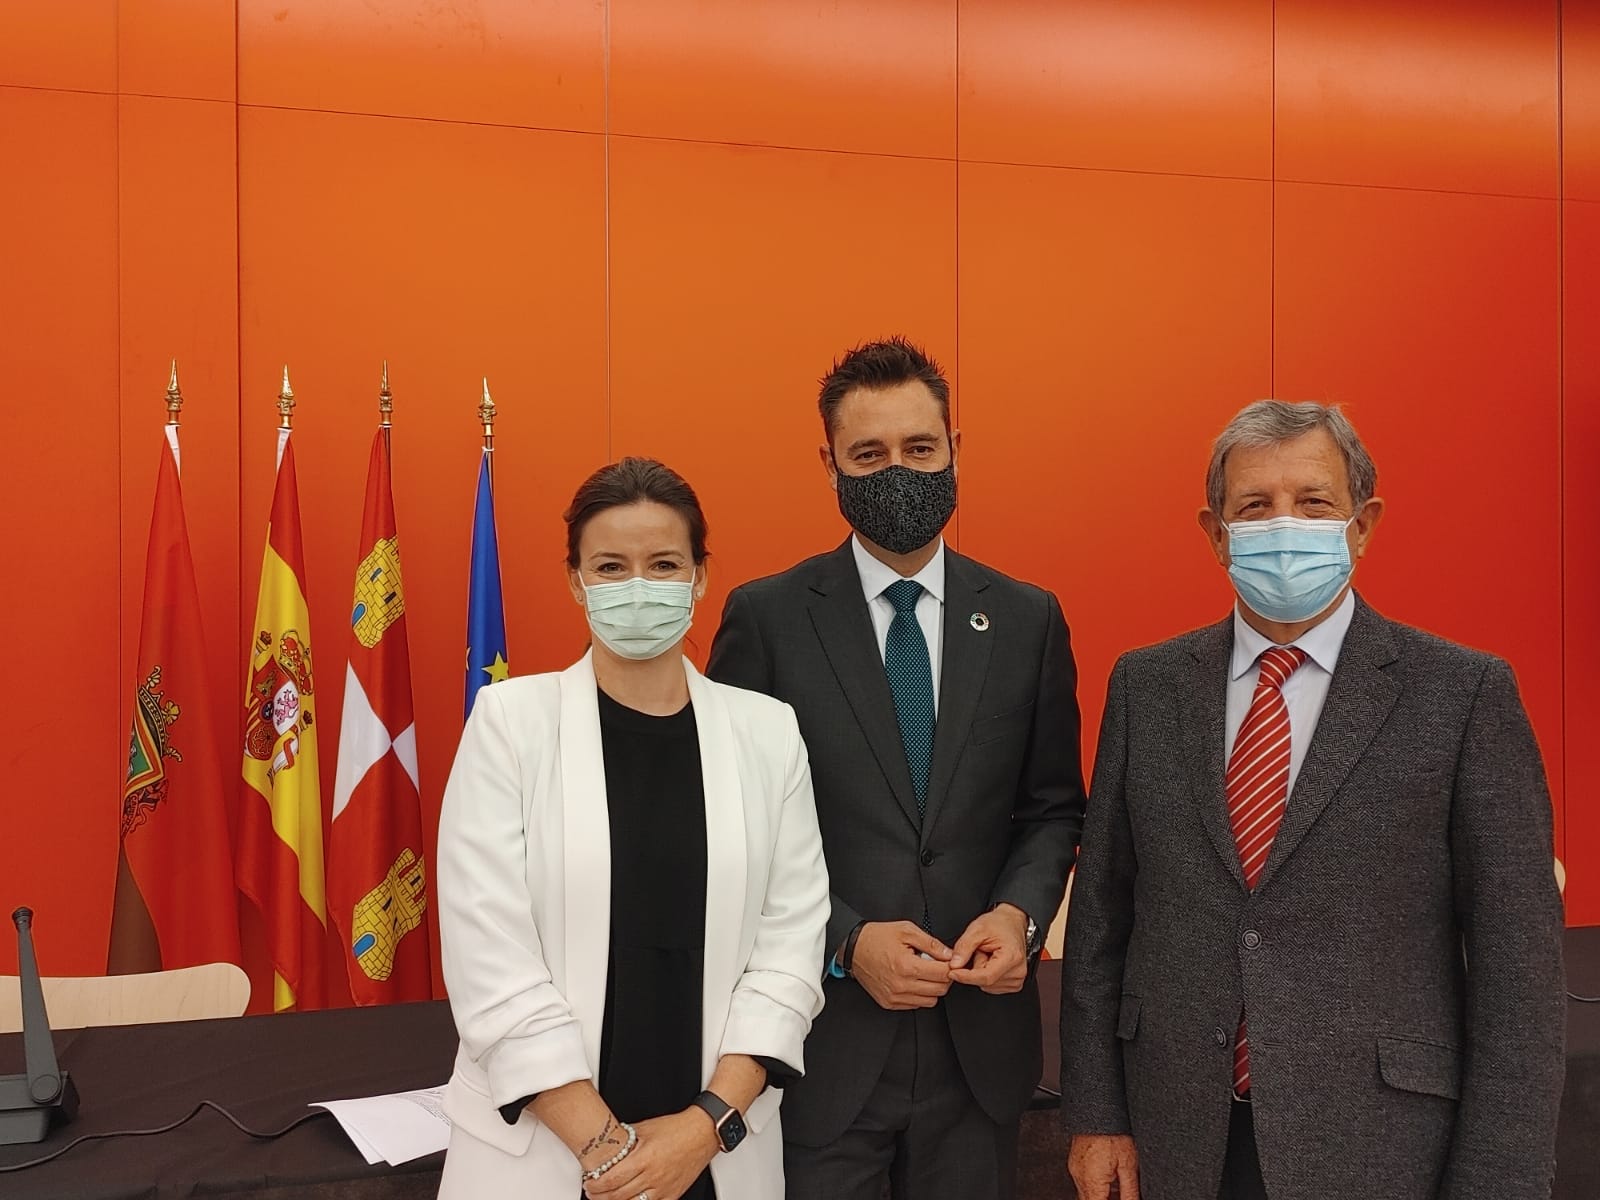 El alcalde y vicepresidente de la RECS, Luis Partida, y la concejala de Salud, Beatriz Peralta, junto al alcalde de Burgos y presidente de la RECS, Daniel de la Rosa.